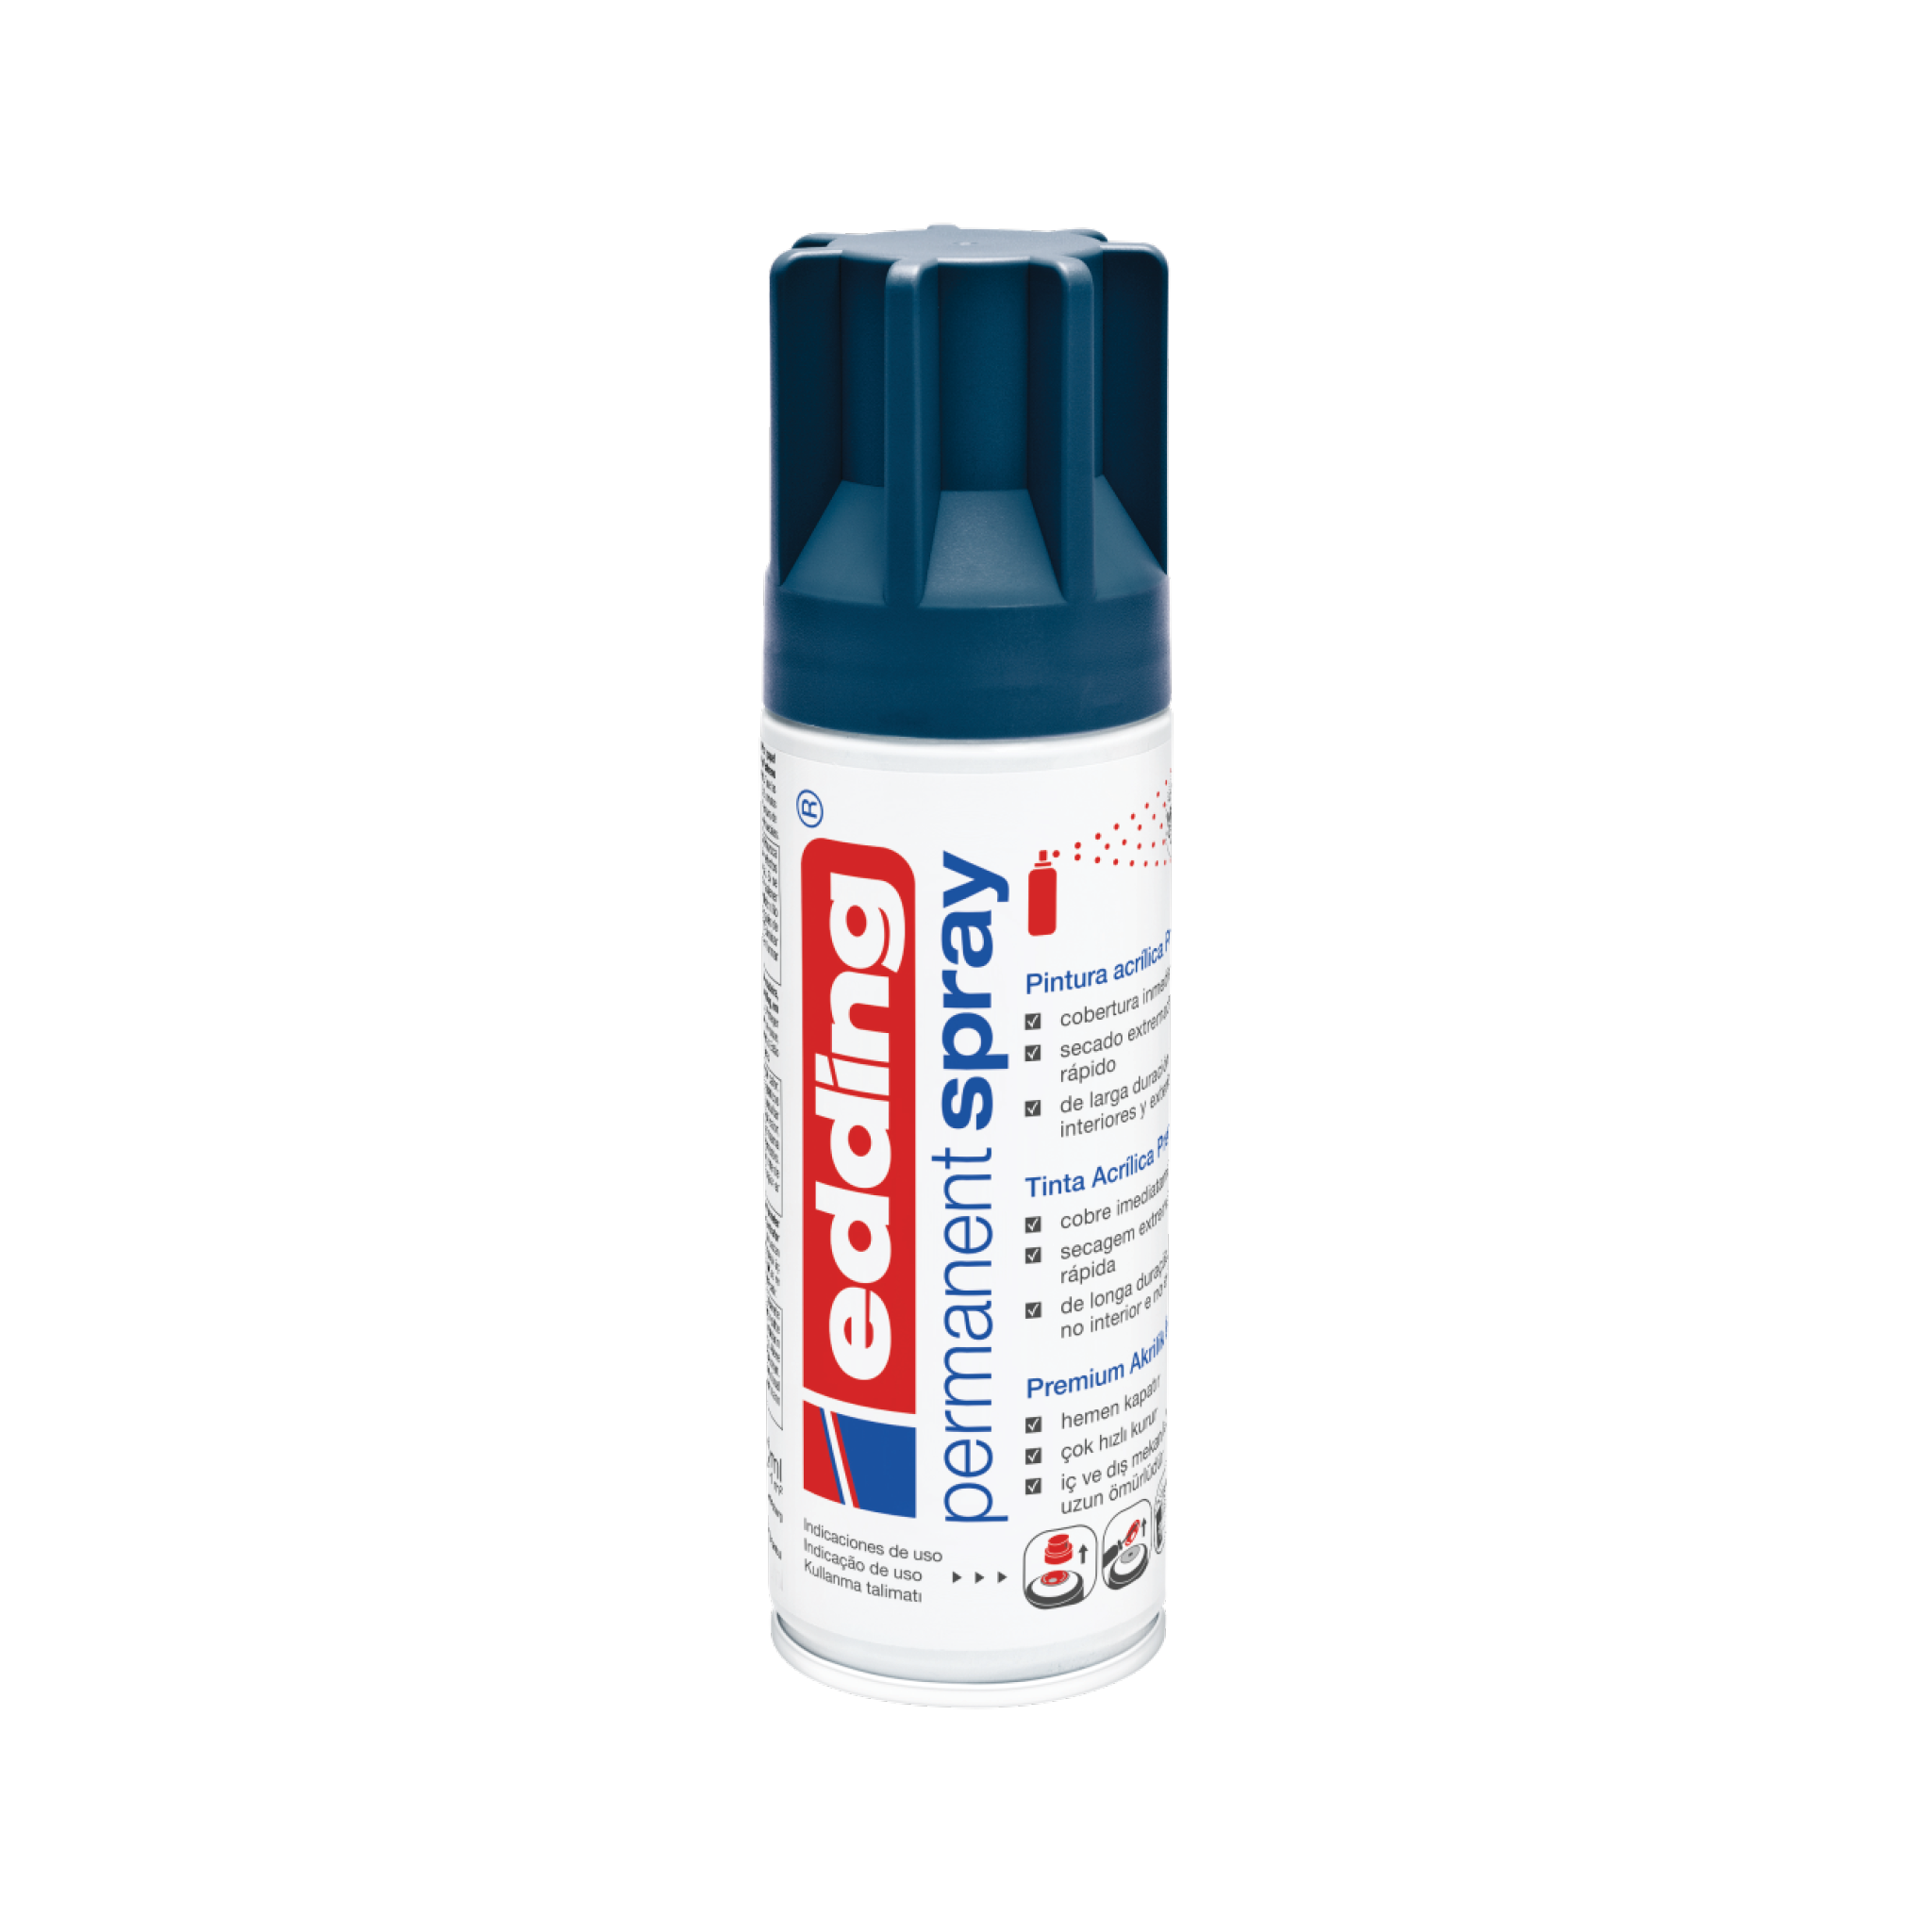 Eine Dose Spezial-Kontakt-Sprühfarbe edding 5200 Permanentspray Acryllack Neon & Kräftige Farben mit blau-weißem Design und Text, der Verwendungszweck und Eigenschaften angibt, einschließlich Neonfarben Acryllack-Spray.